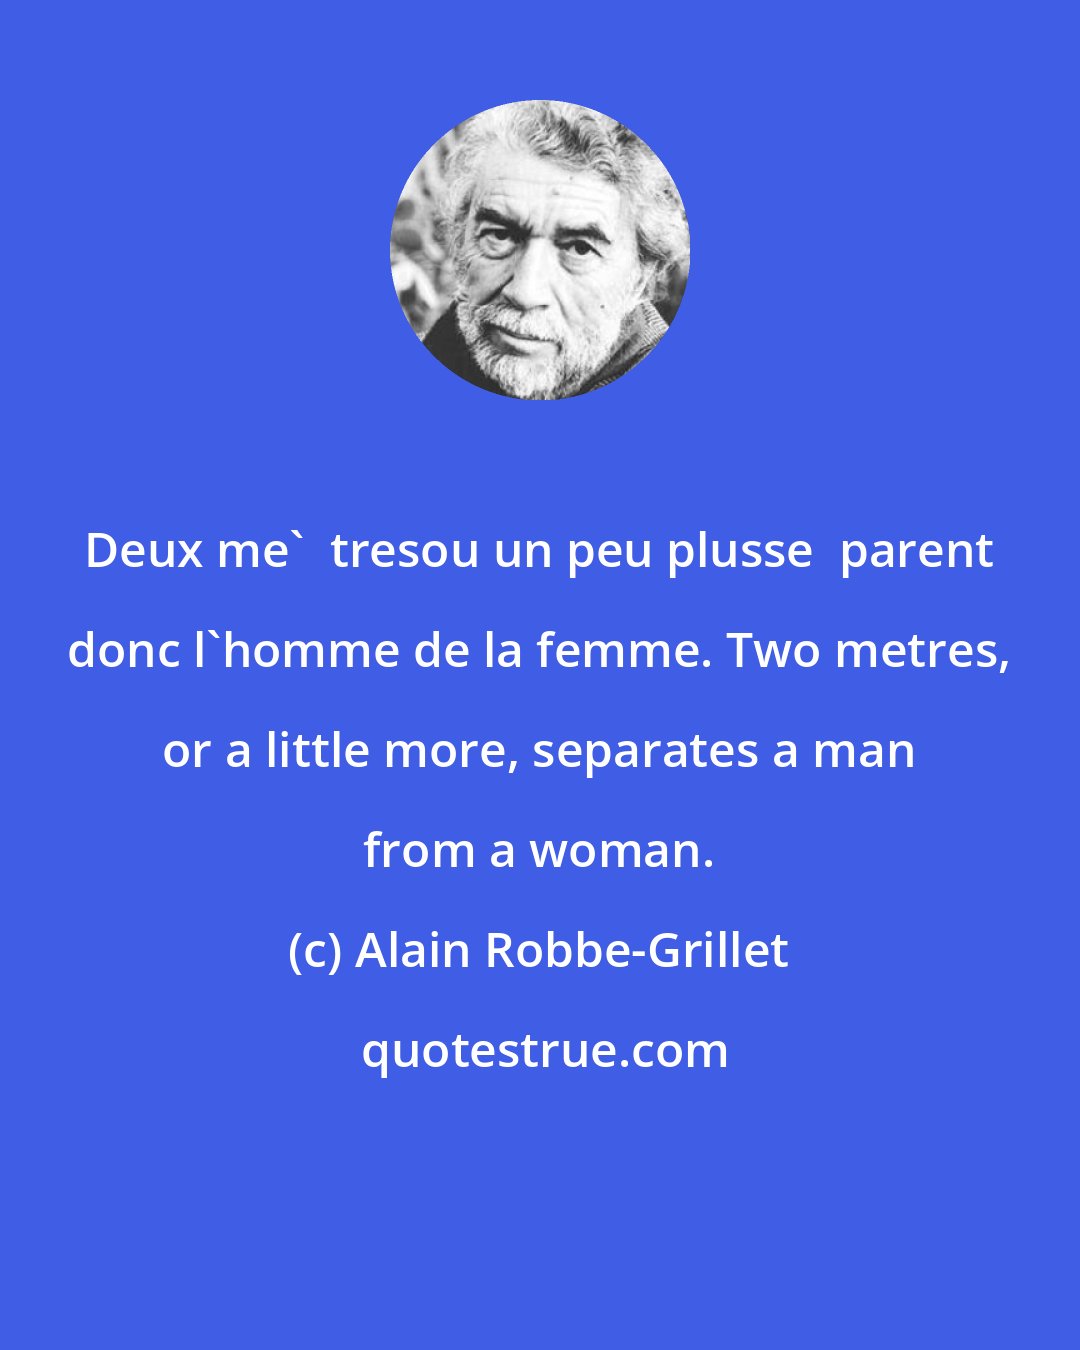 Alain Robbe-Grillet: Deux me'  tresou un peu plusse  parent donc l'homme de la femme. Two metres, or a little more, separates a man from a woman.